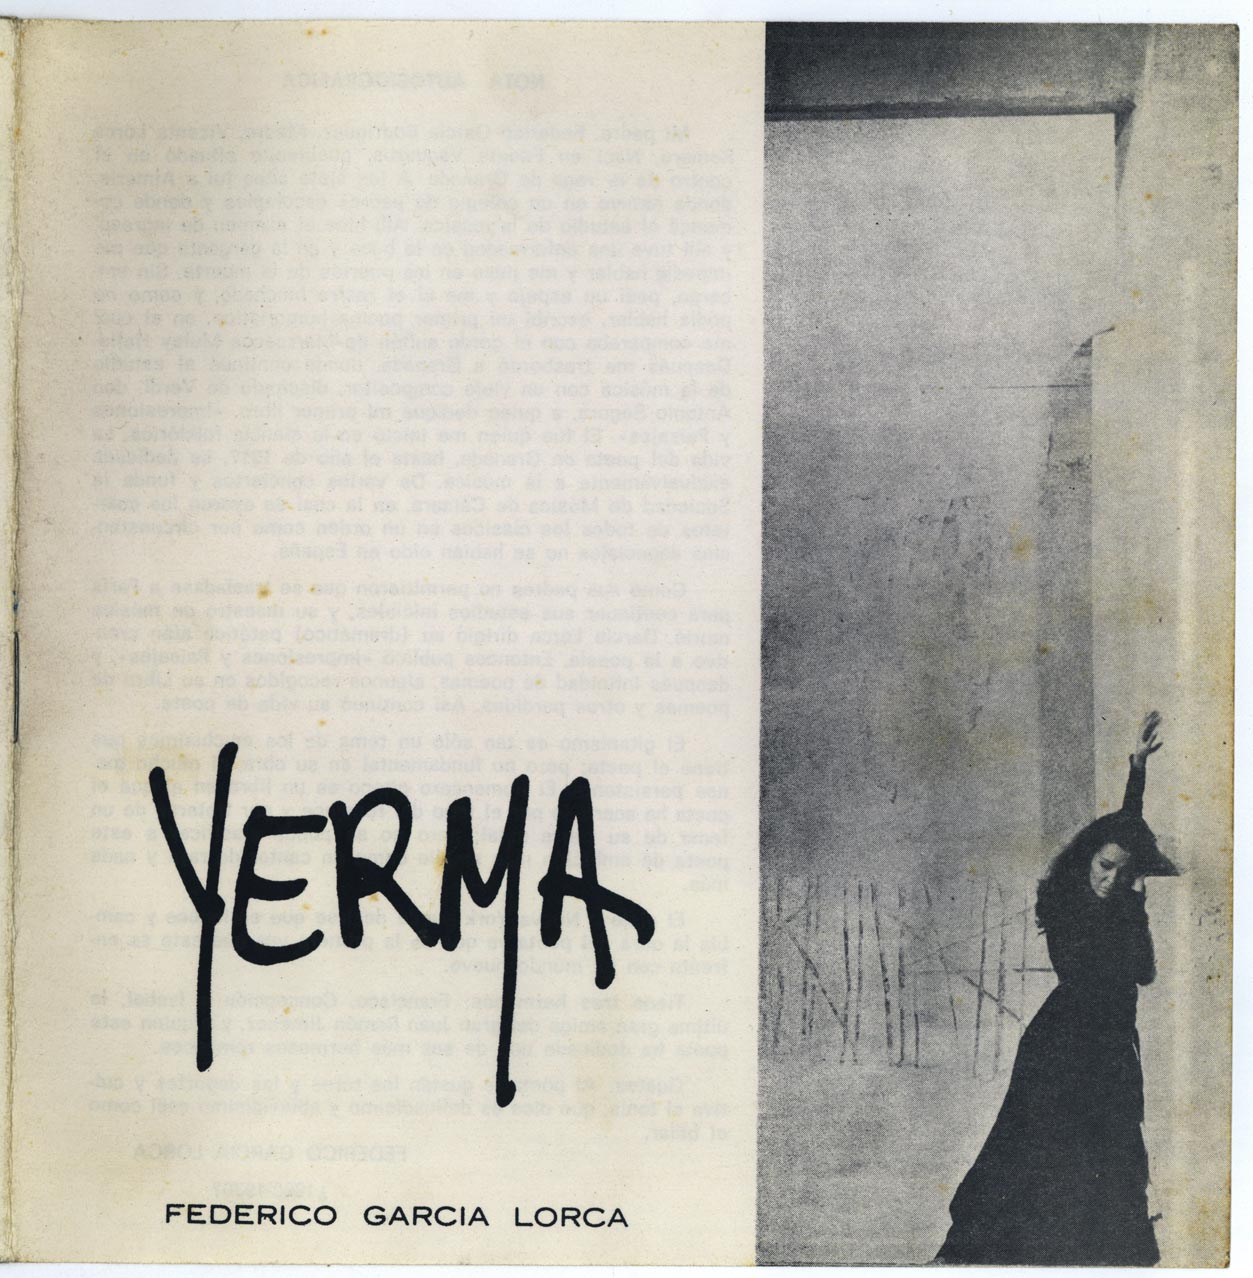 Libreto de la obra Yerma, de Federico García Lorca, representada por El 
Lebrel Blanco en Pamplona.